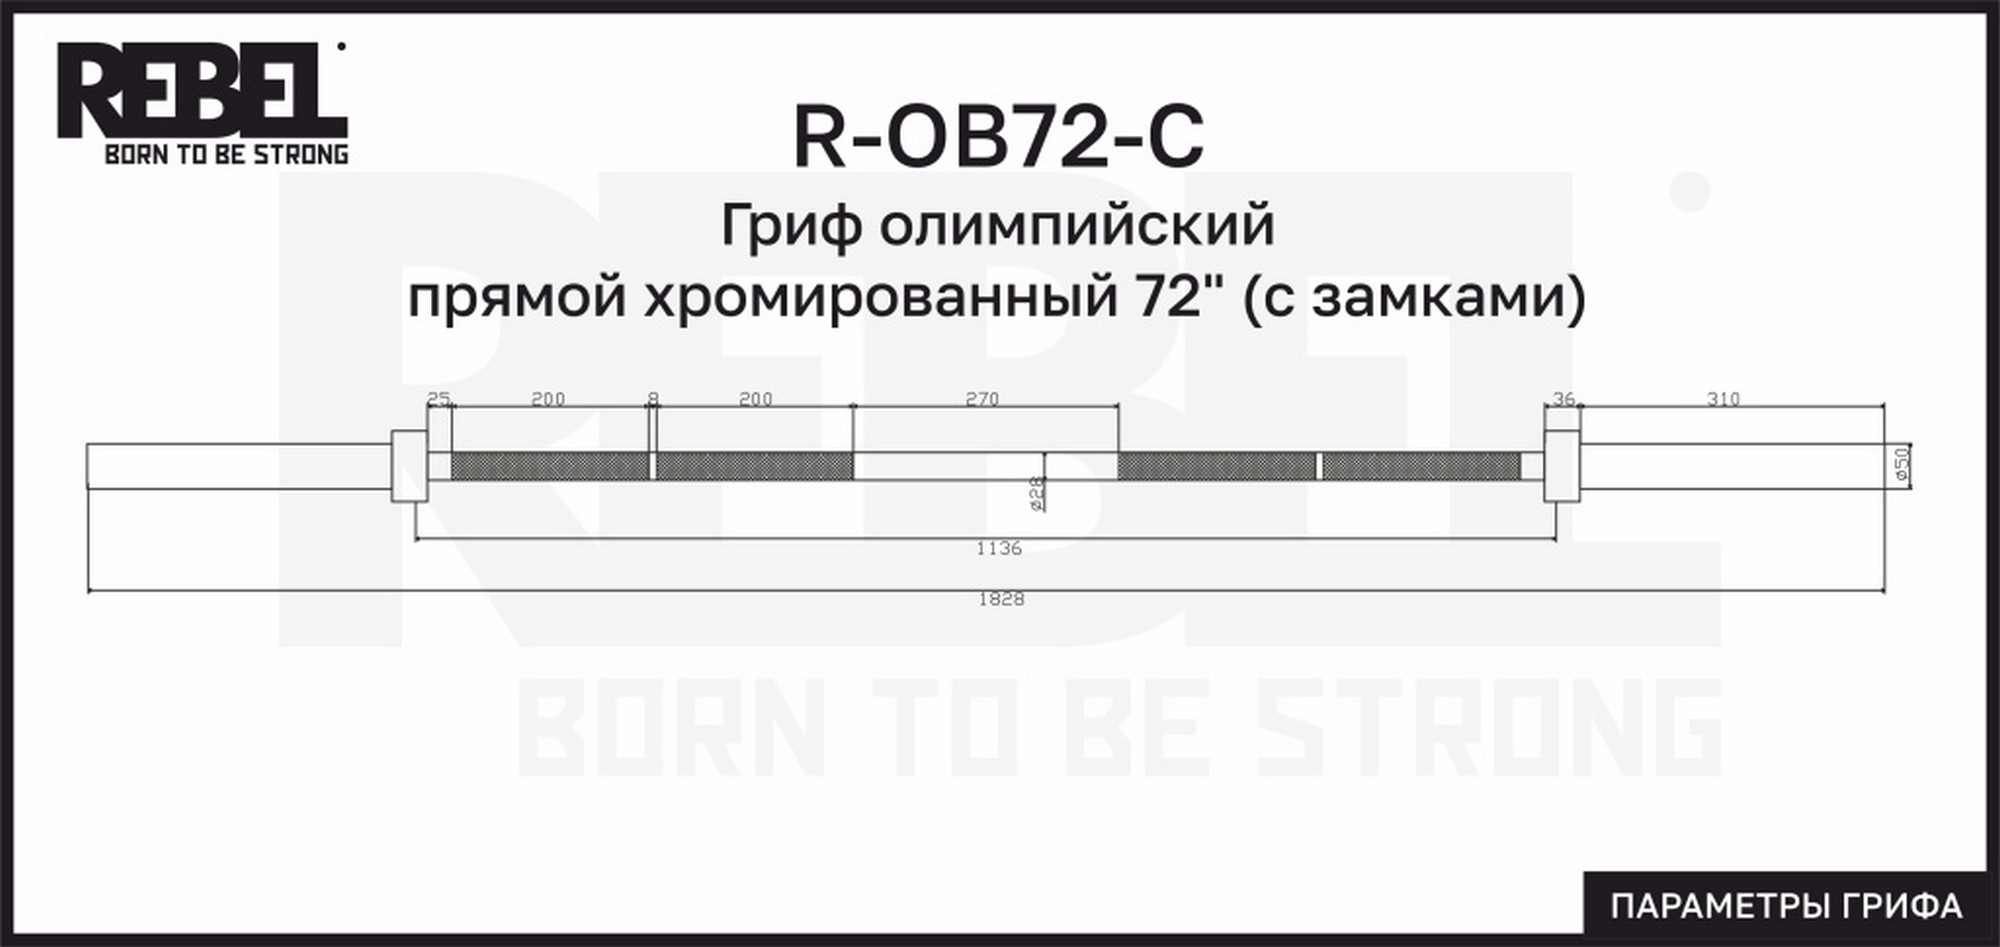 Гриф олимпийский прямой хромированный 72" с замками REBEL R-OB72-C 2000_947